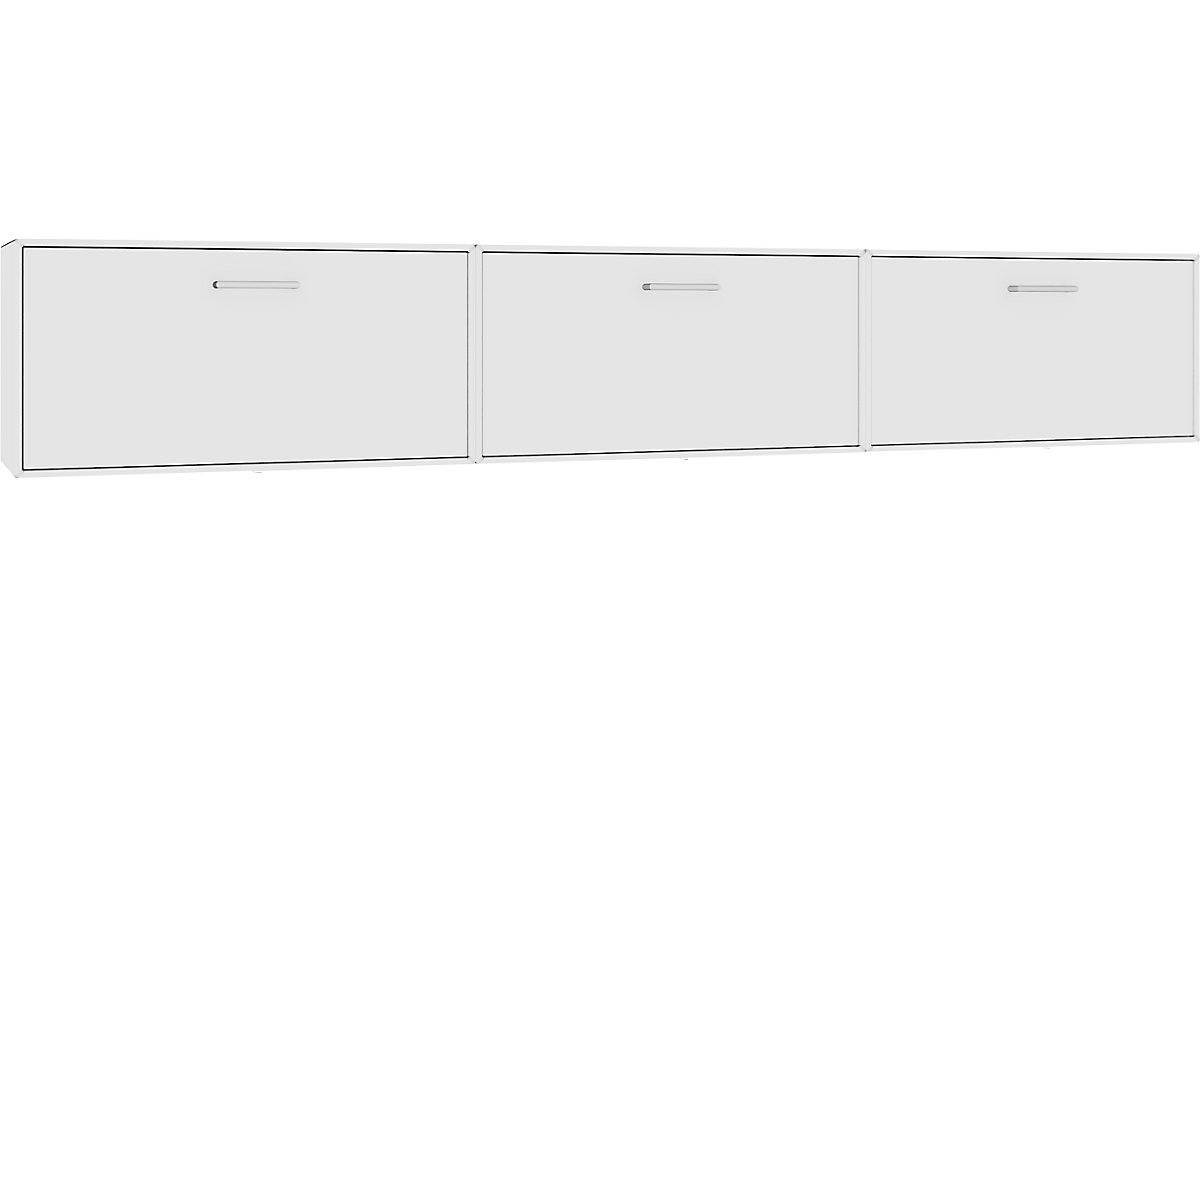 Combinación de muebles-bar colgantes – mauser, 3 barras abatibles, blanco puro-6